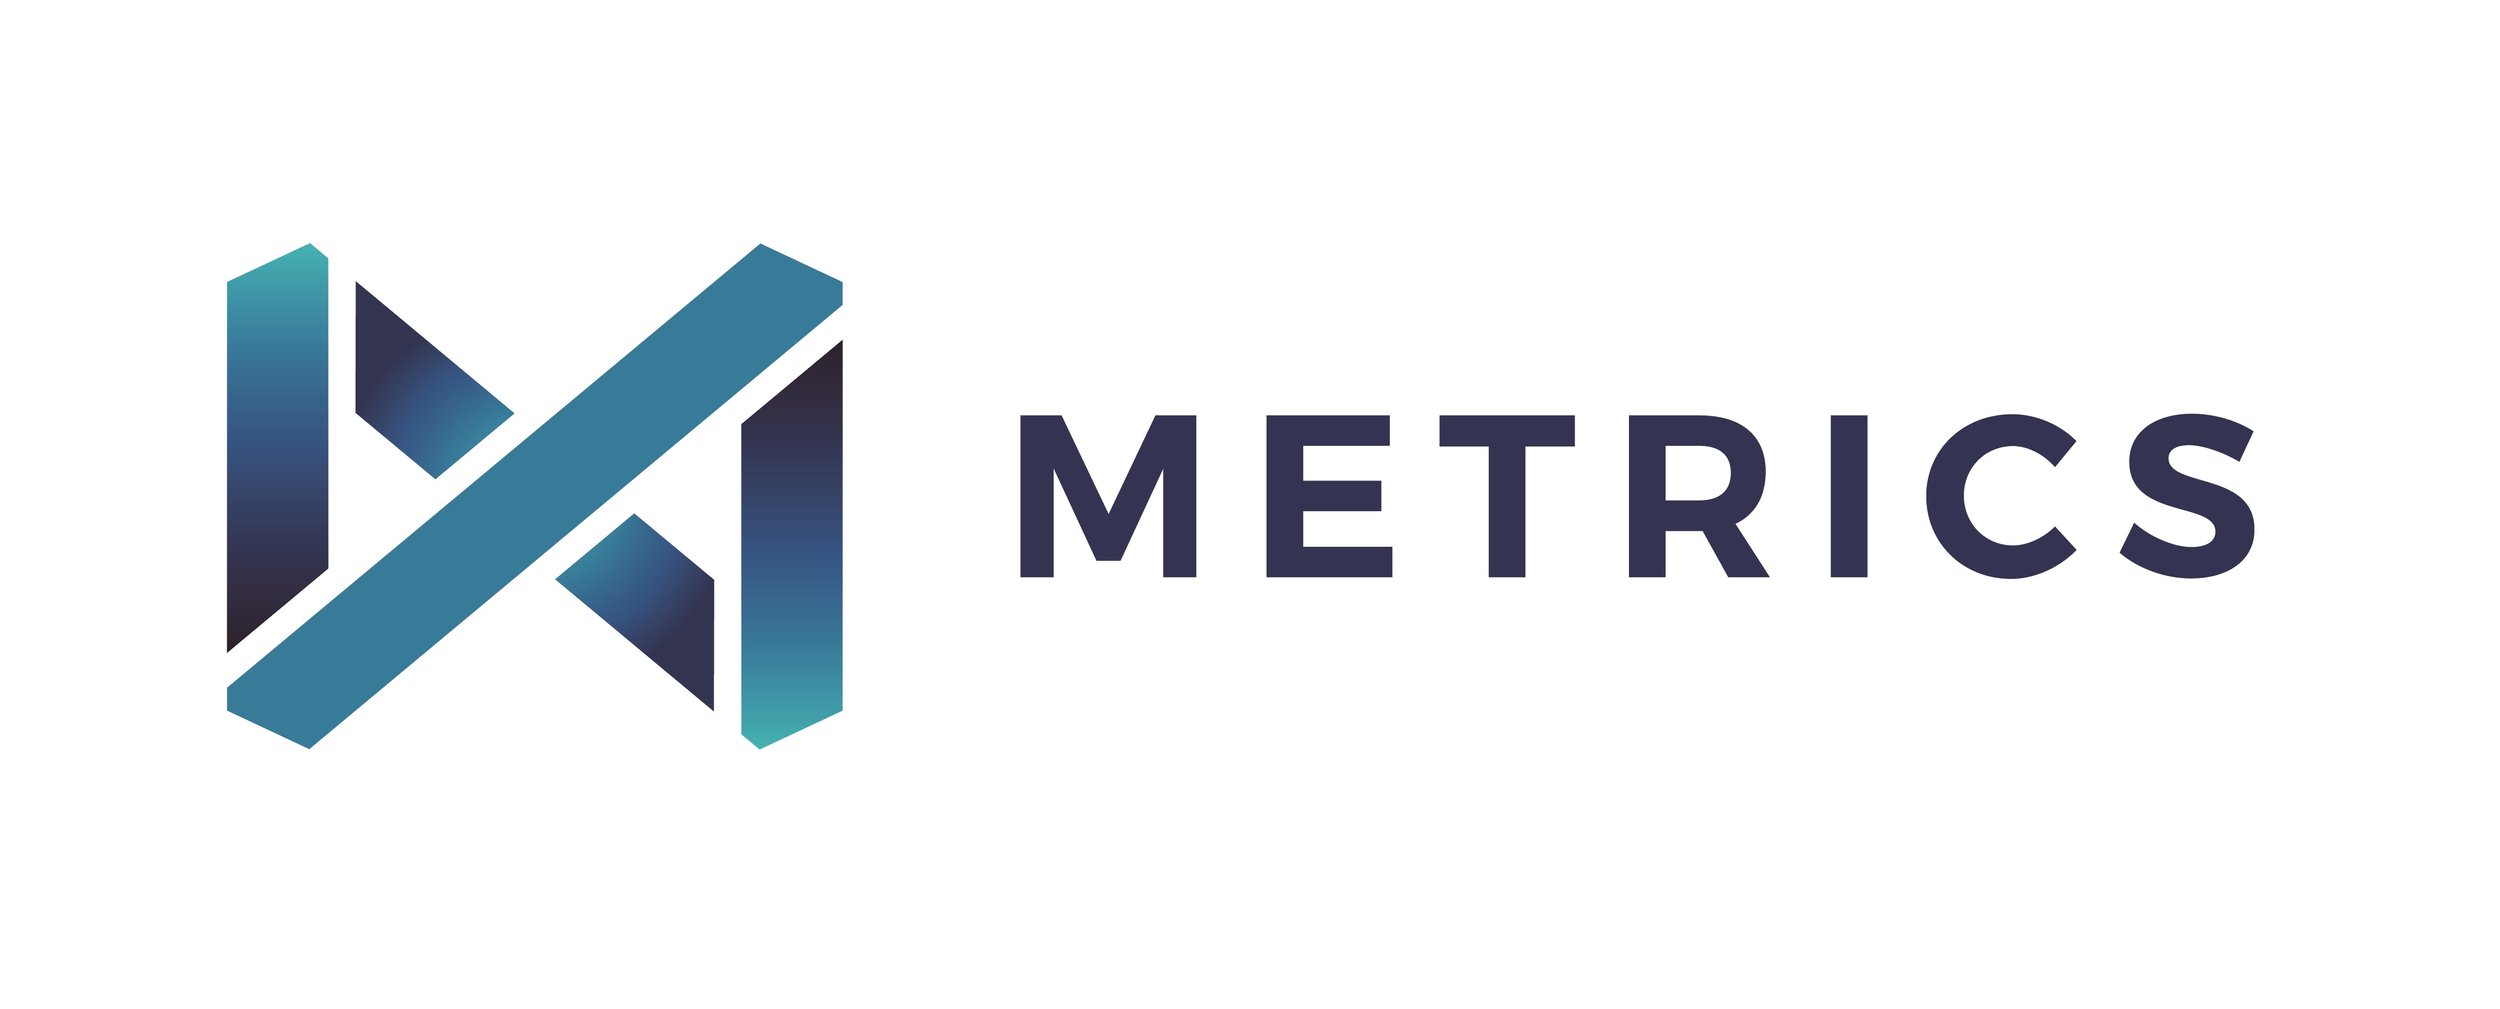 Metrics logo.jpg